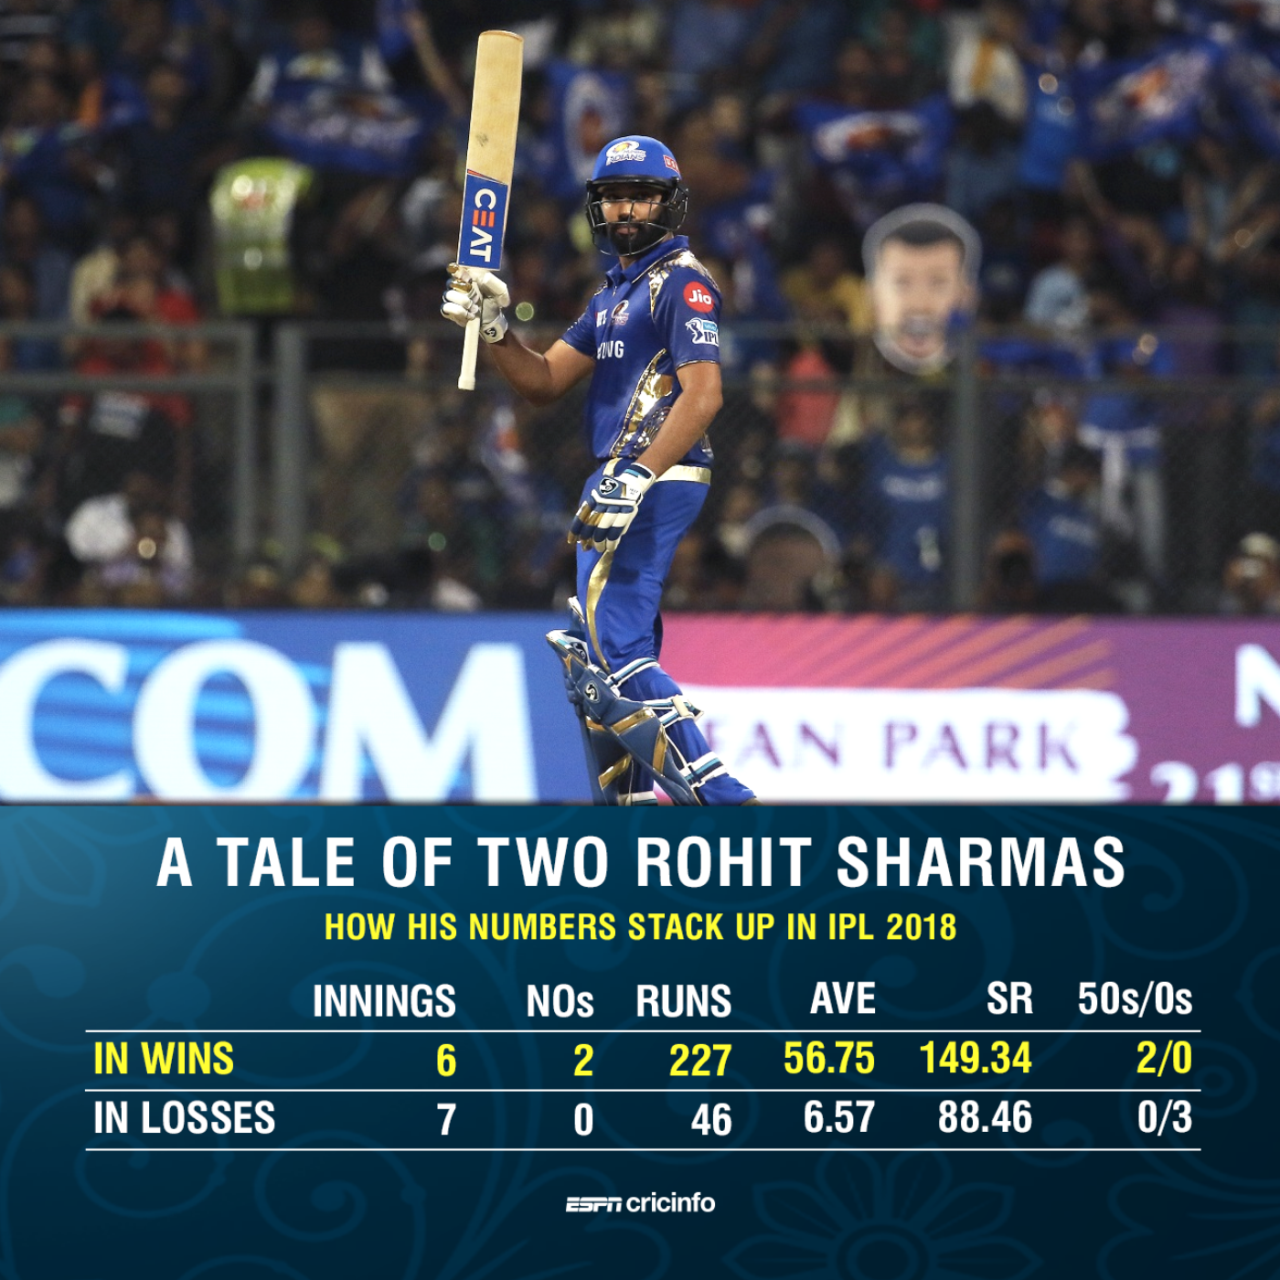 Rohit Sharma's form this season